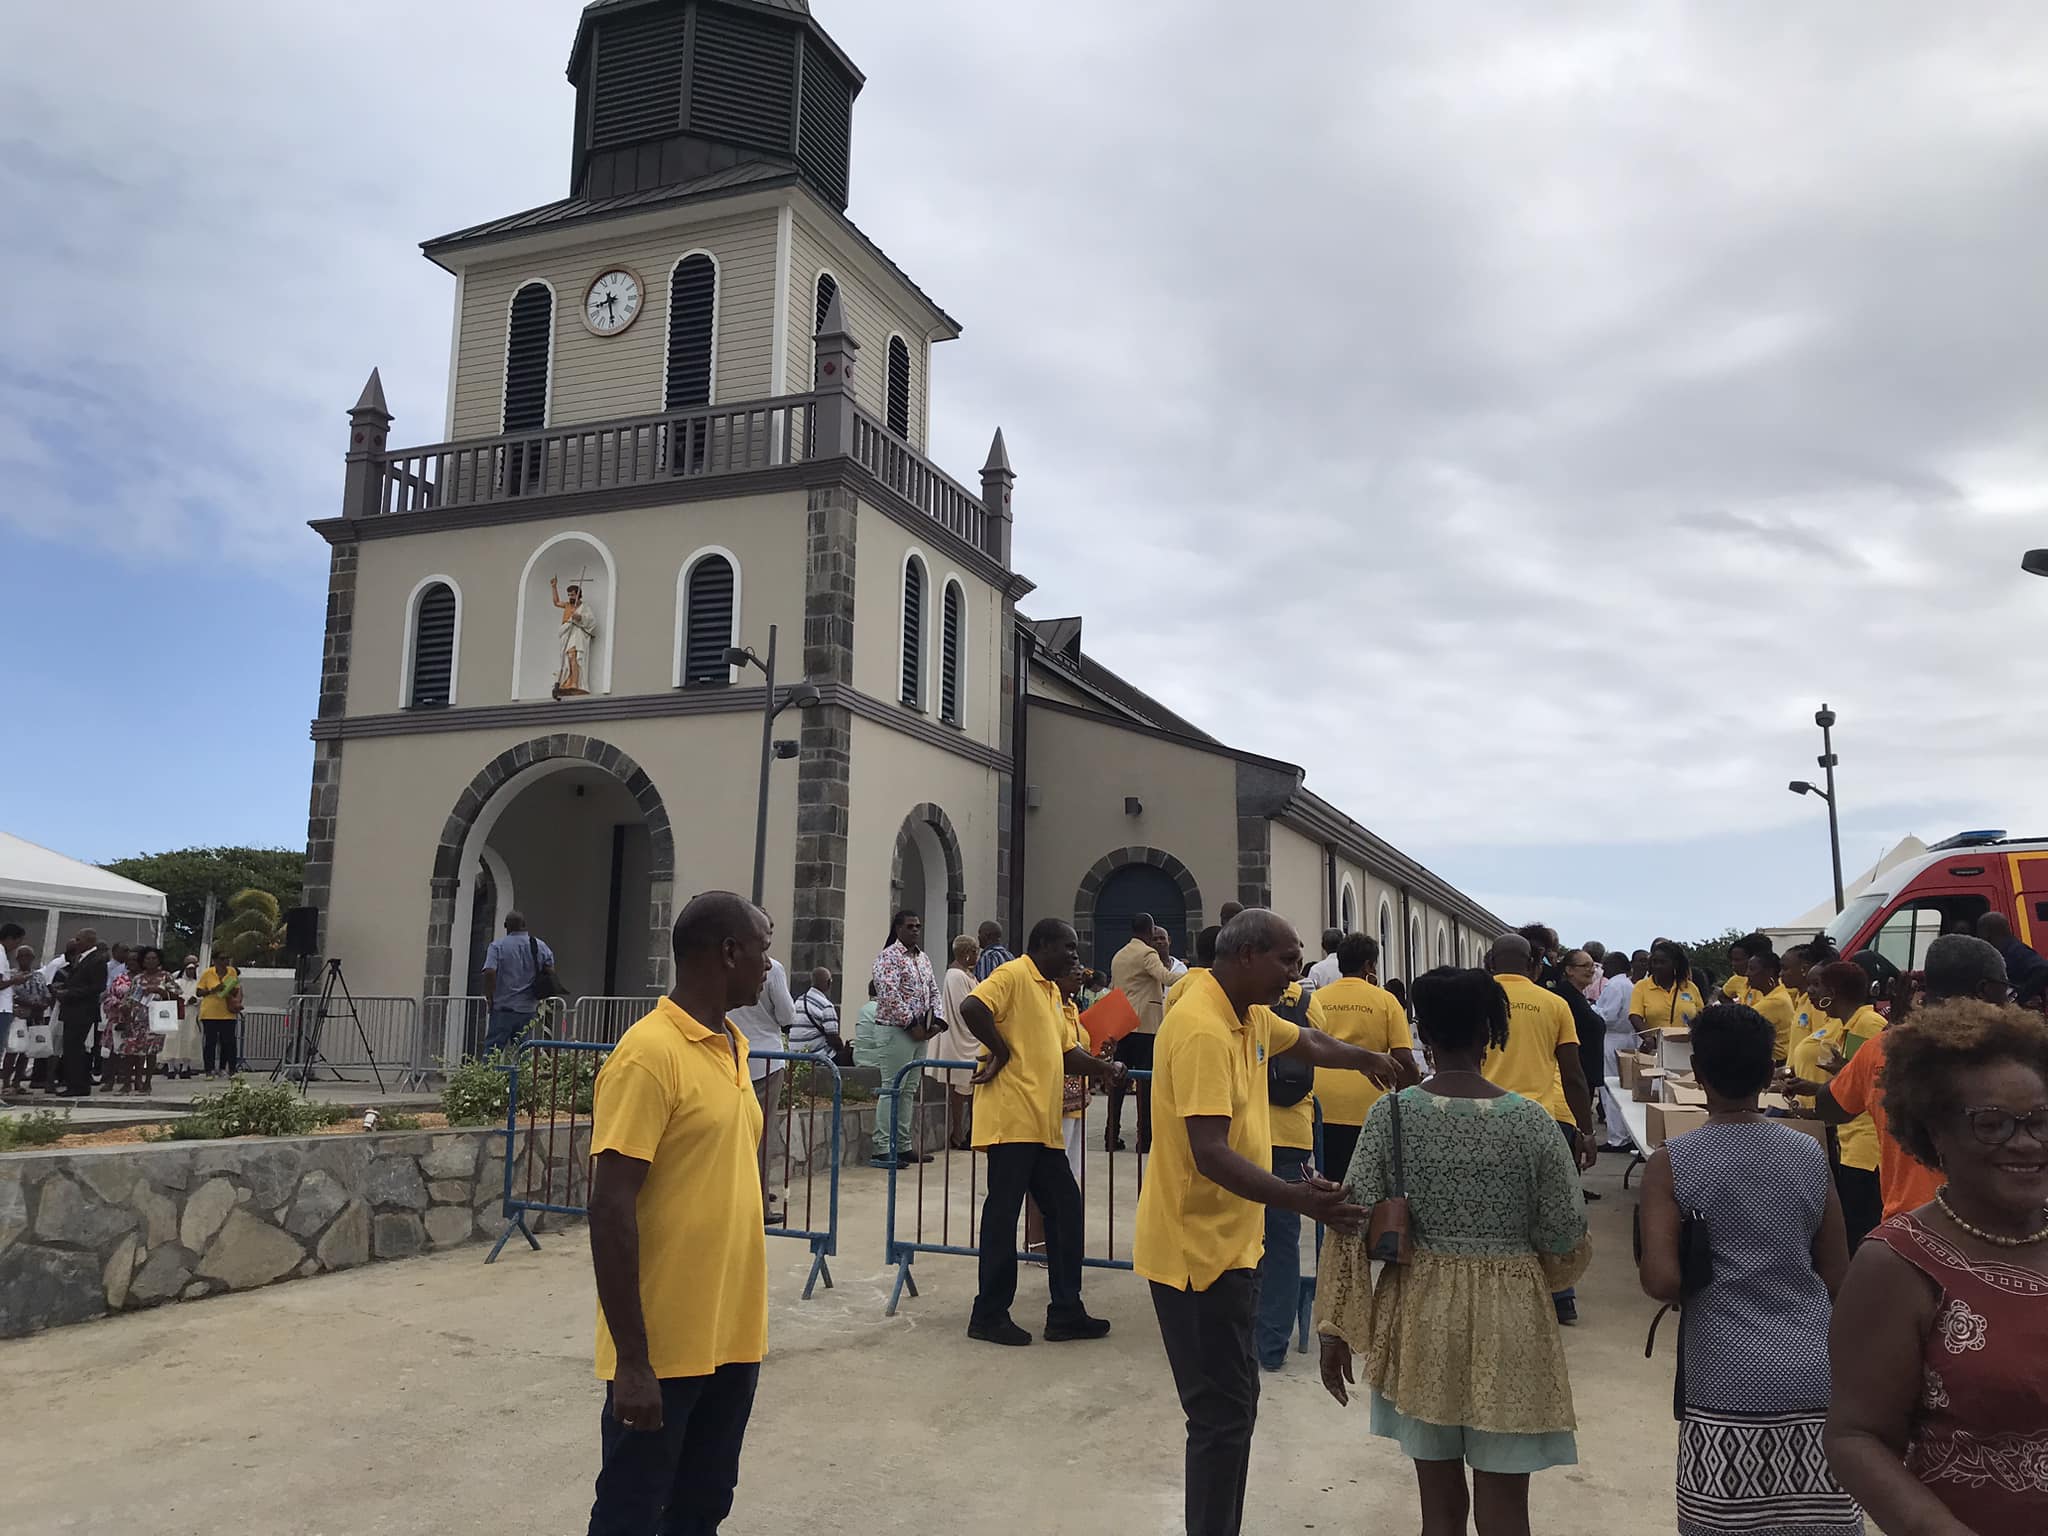     16 ans après, l’église de Basse-Pointe enfin rouverte dans la liesse

